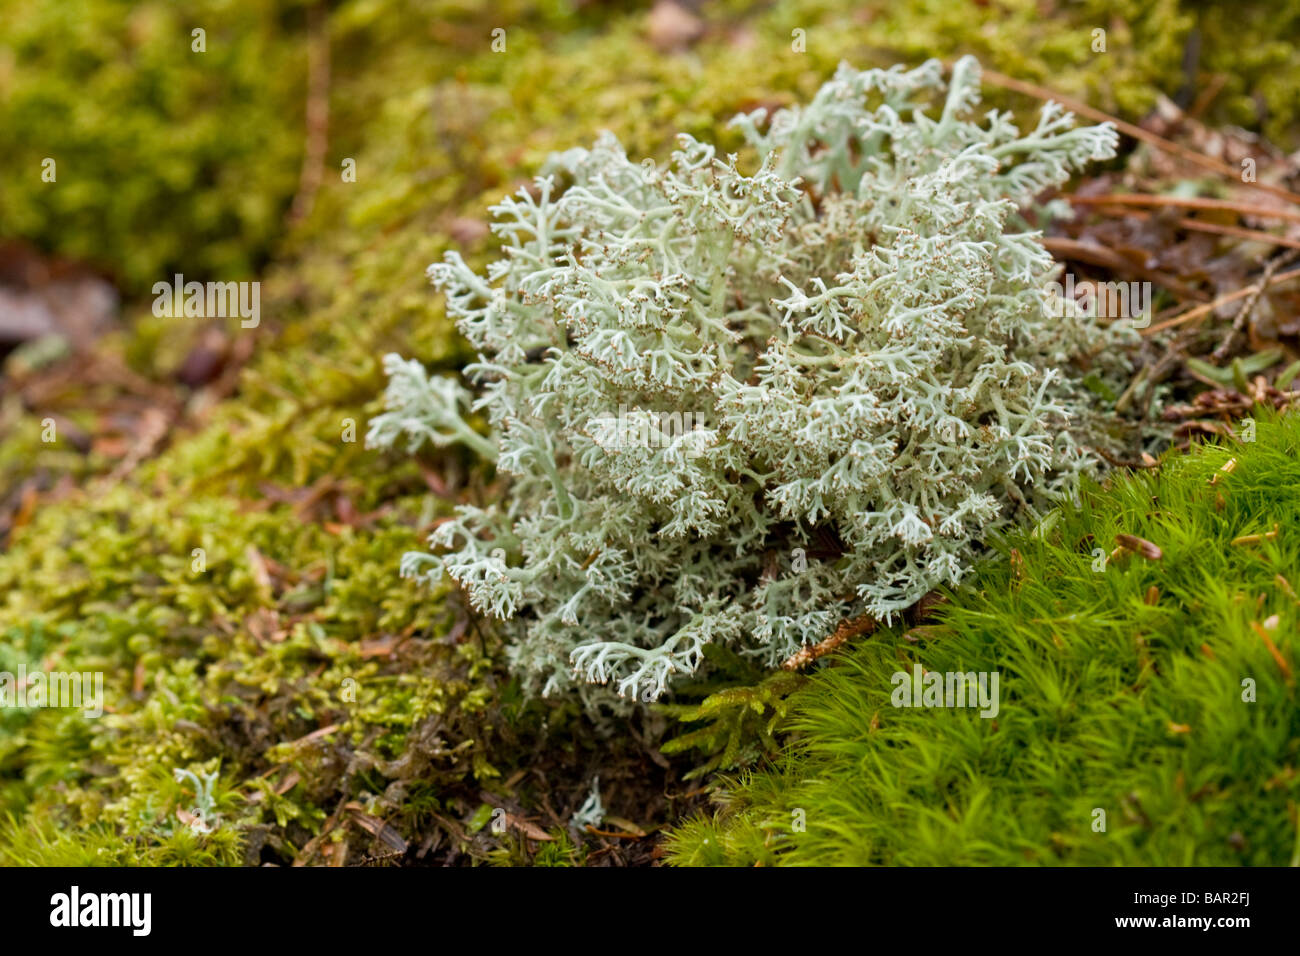 Immagine macro di renne moss Foto Stock